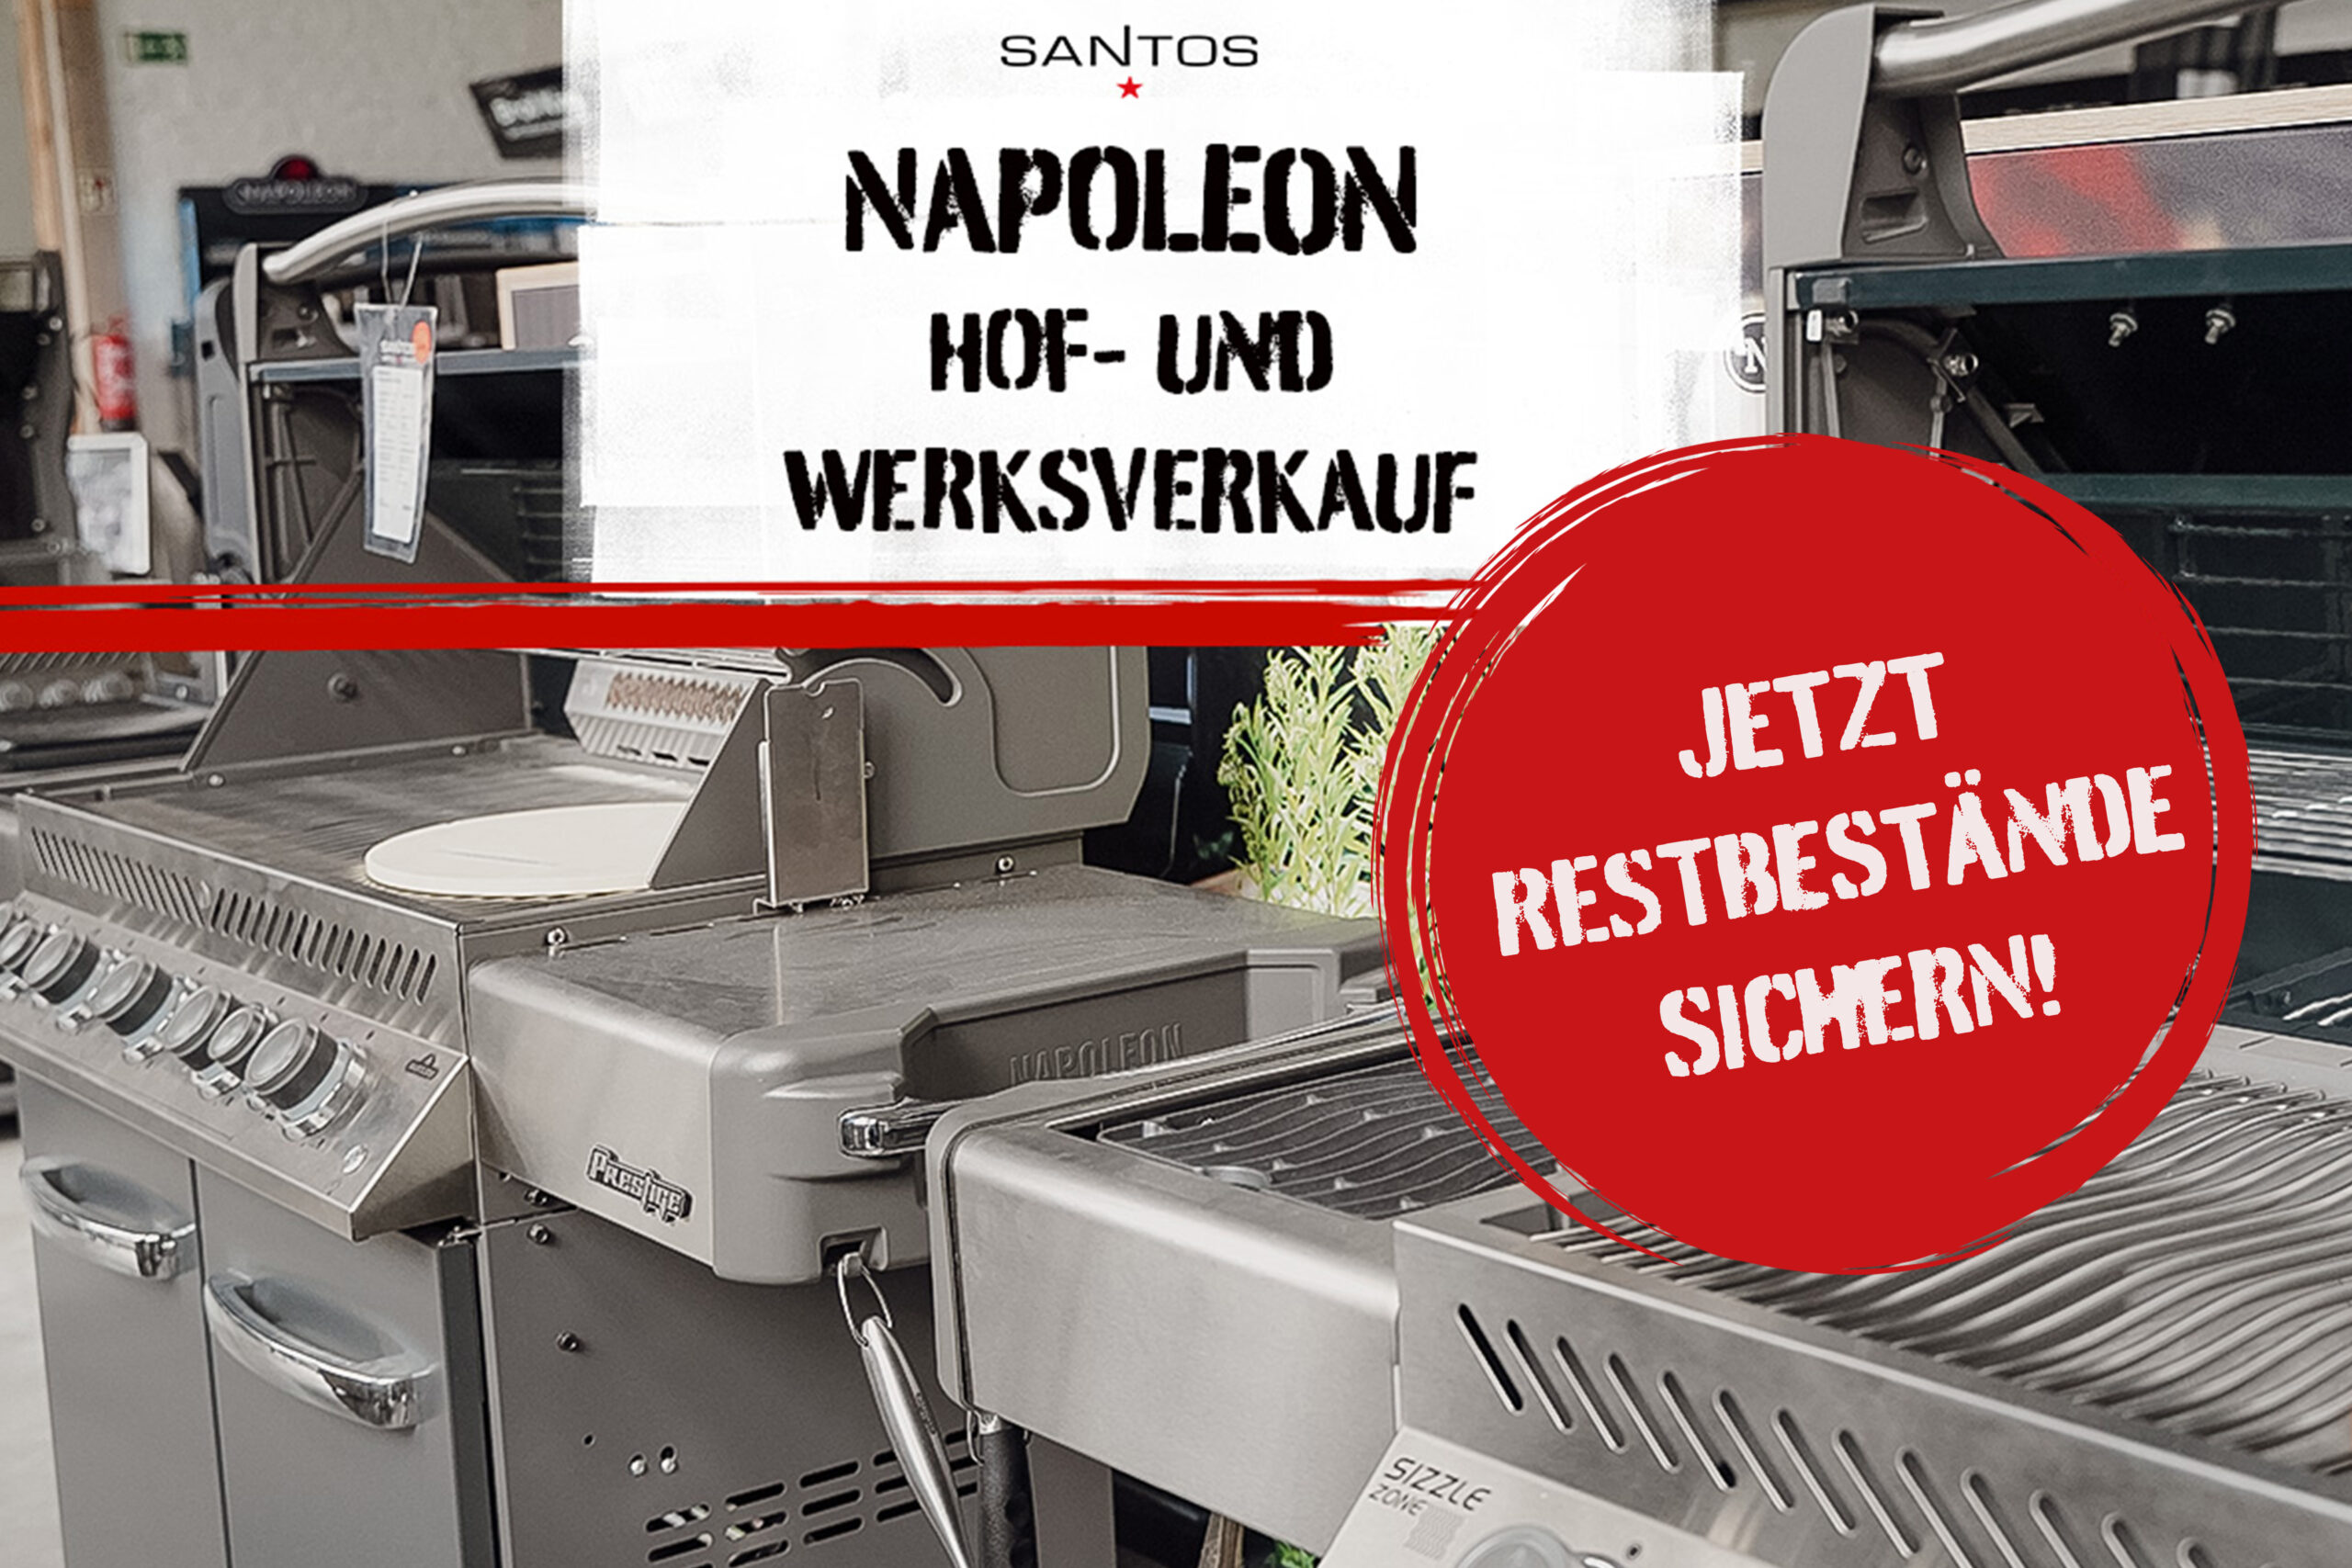 Napoleon Grills Hof- und Werksverkauf: Restbestände